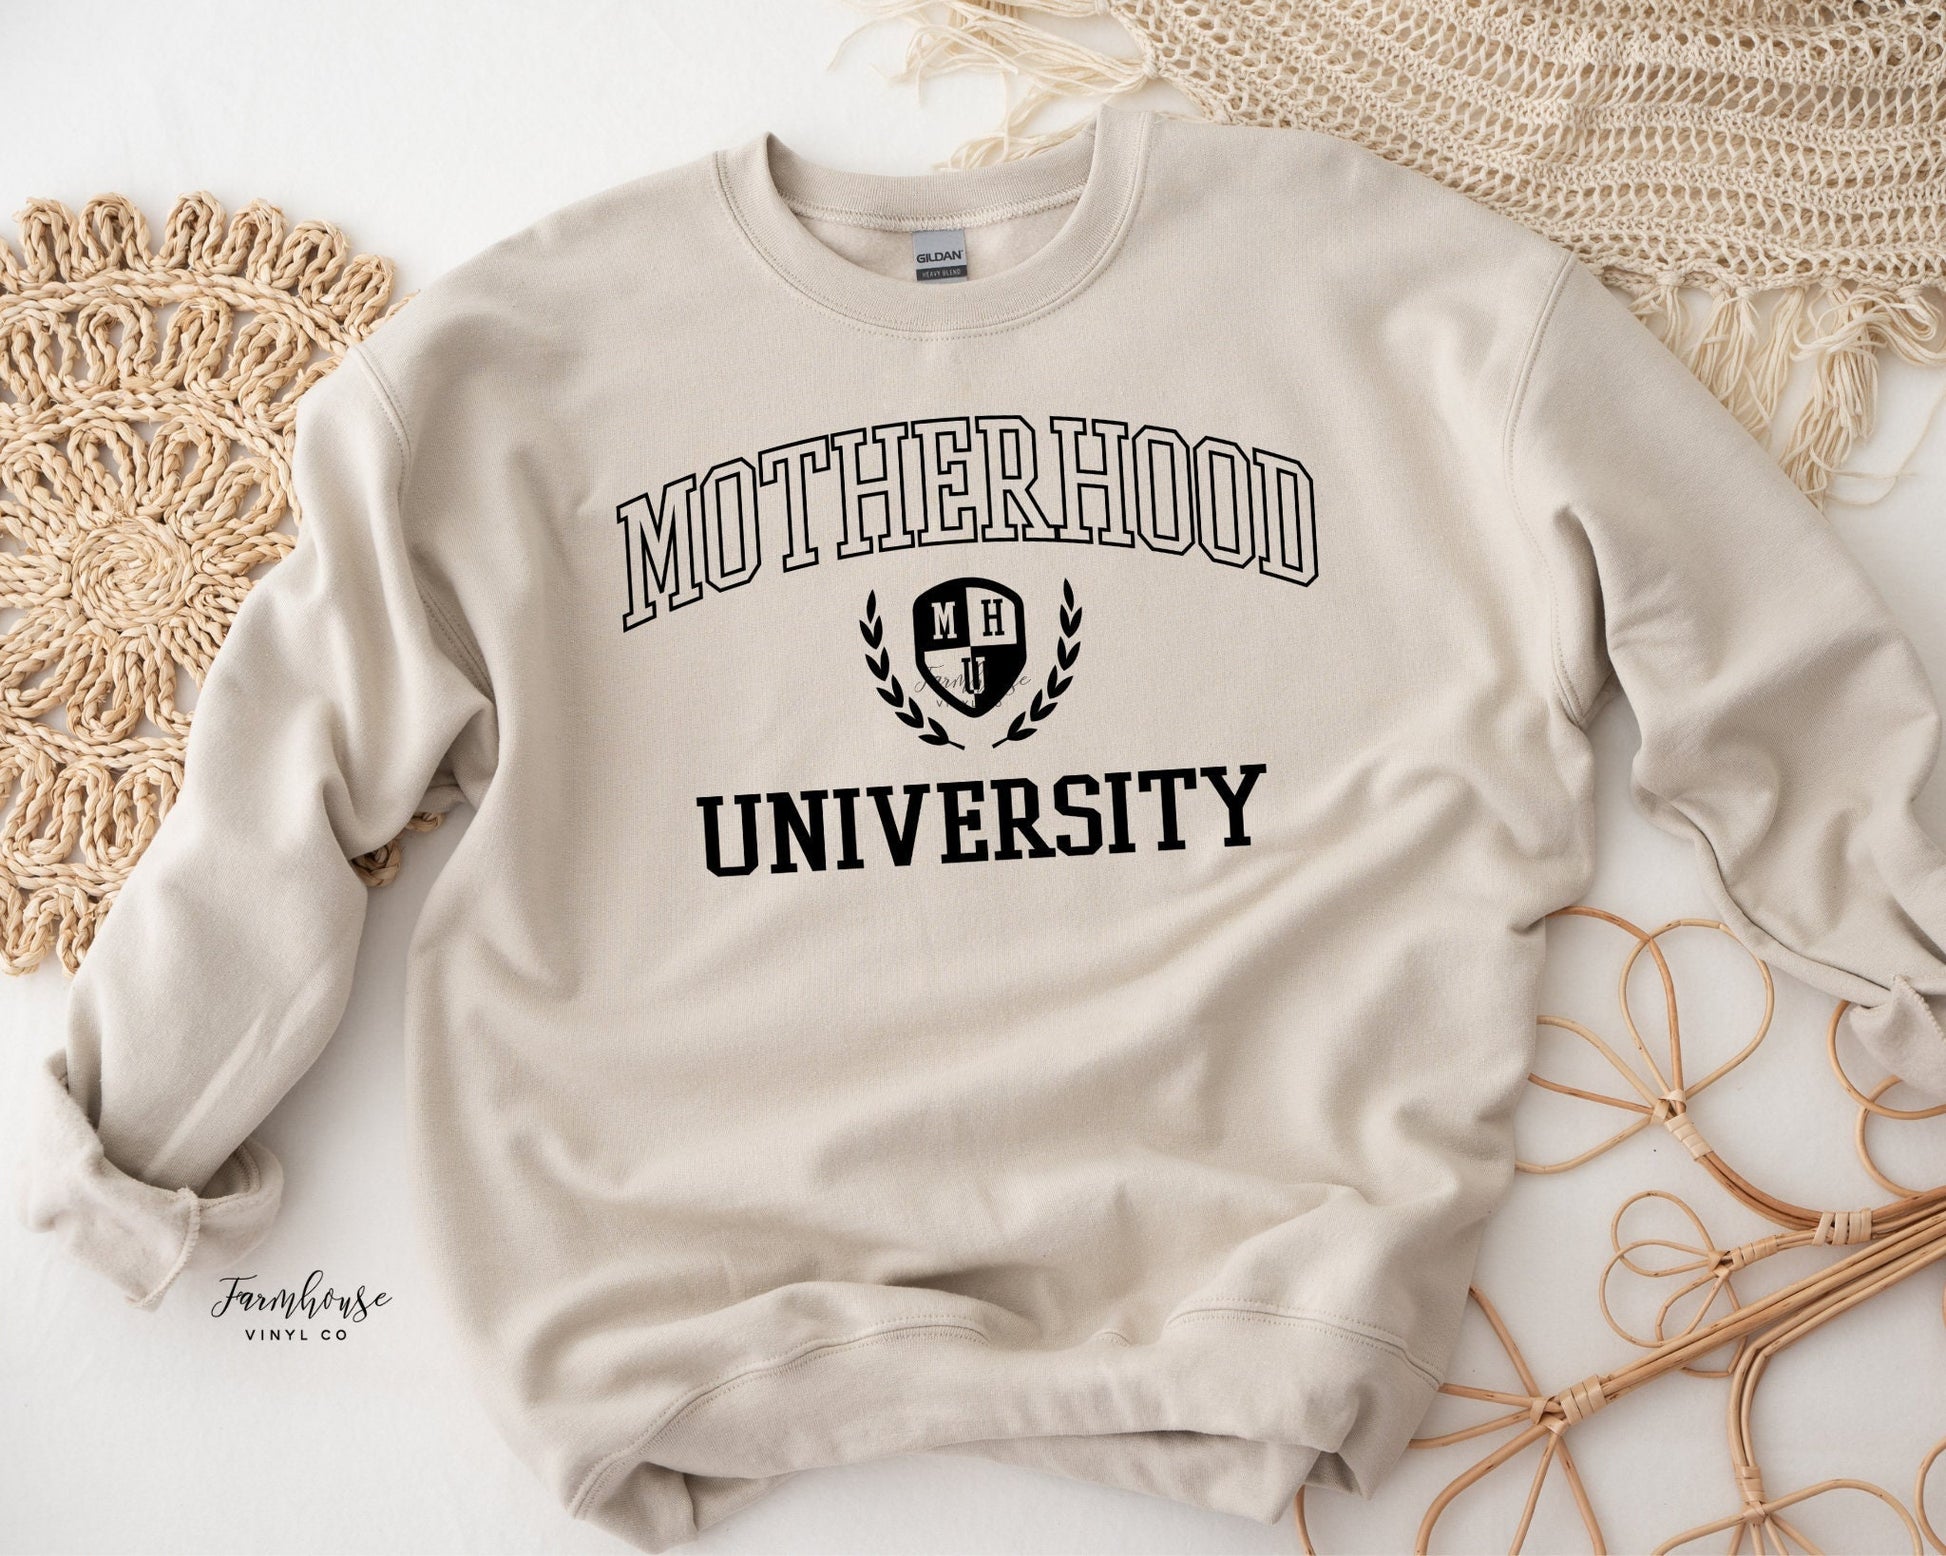 Motherhood University Shirt - Farmhouse Vinyl Co